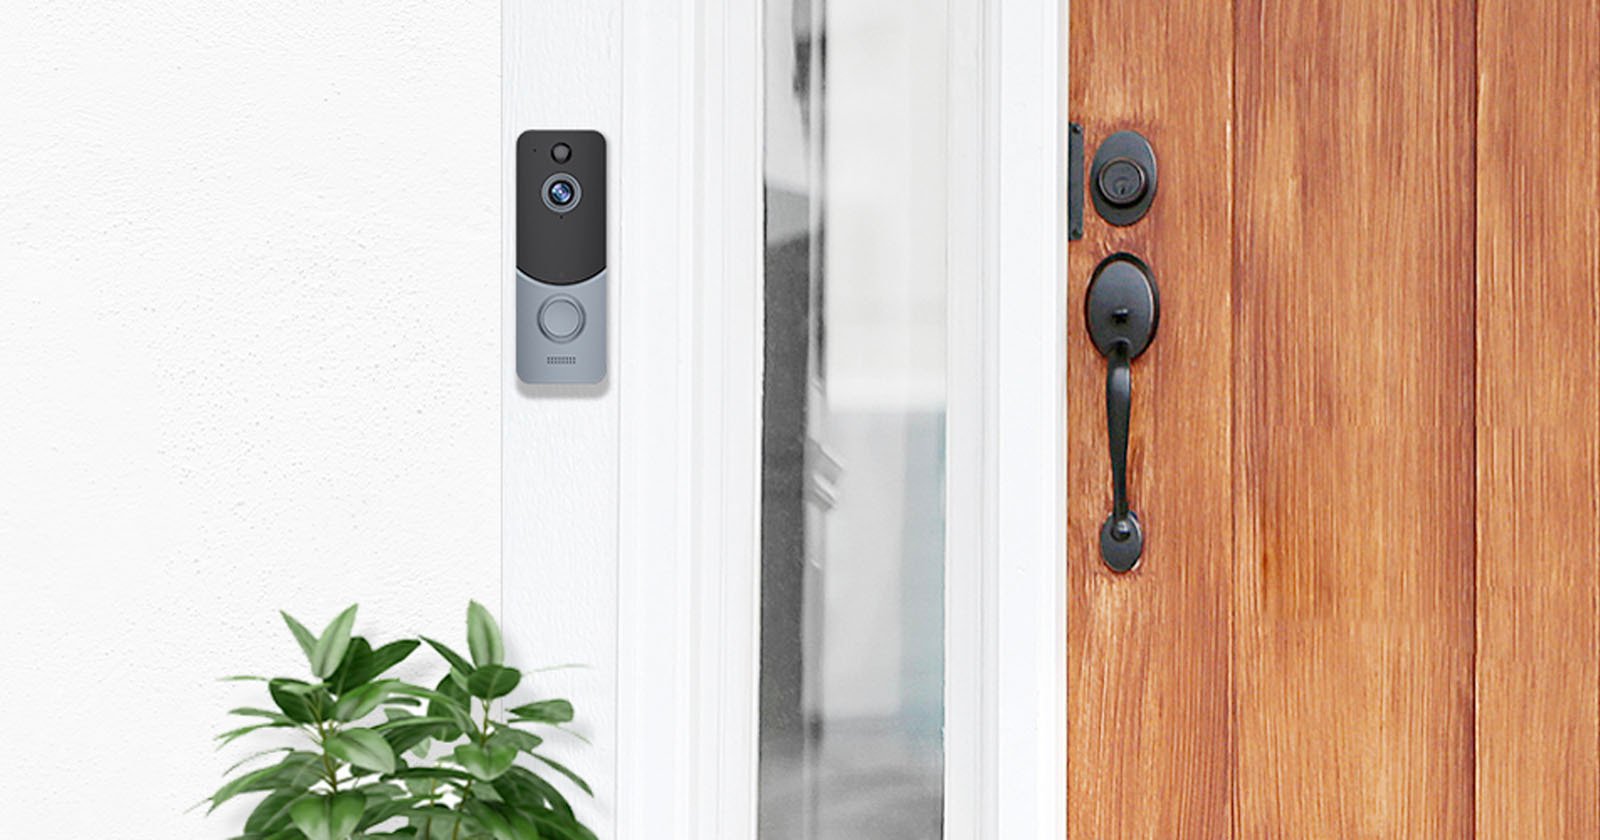 Rendering of an Eken smart doorbell.